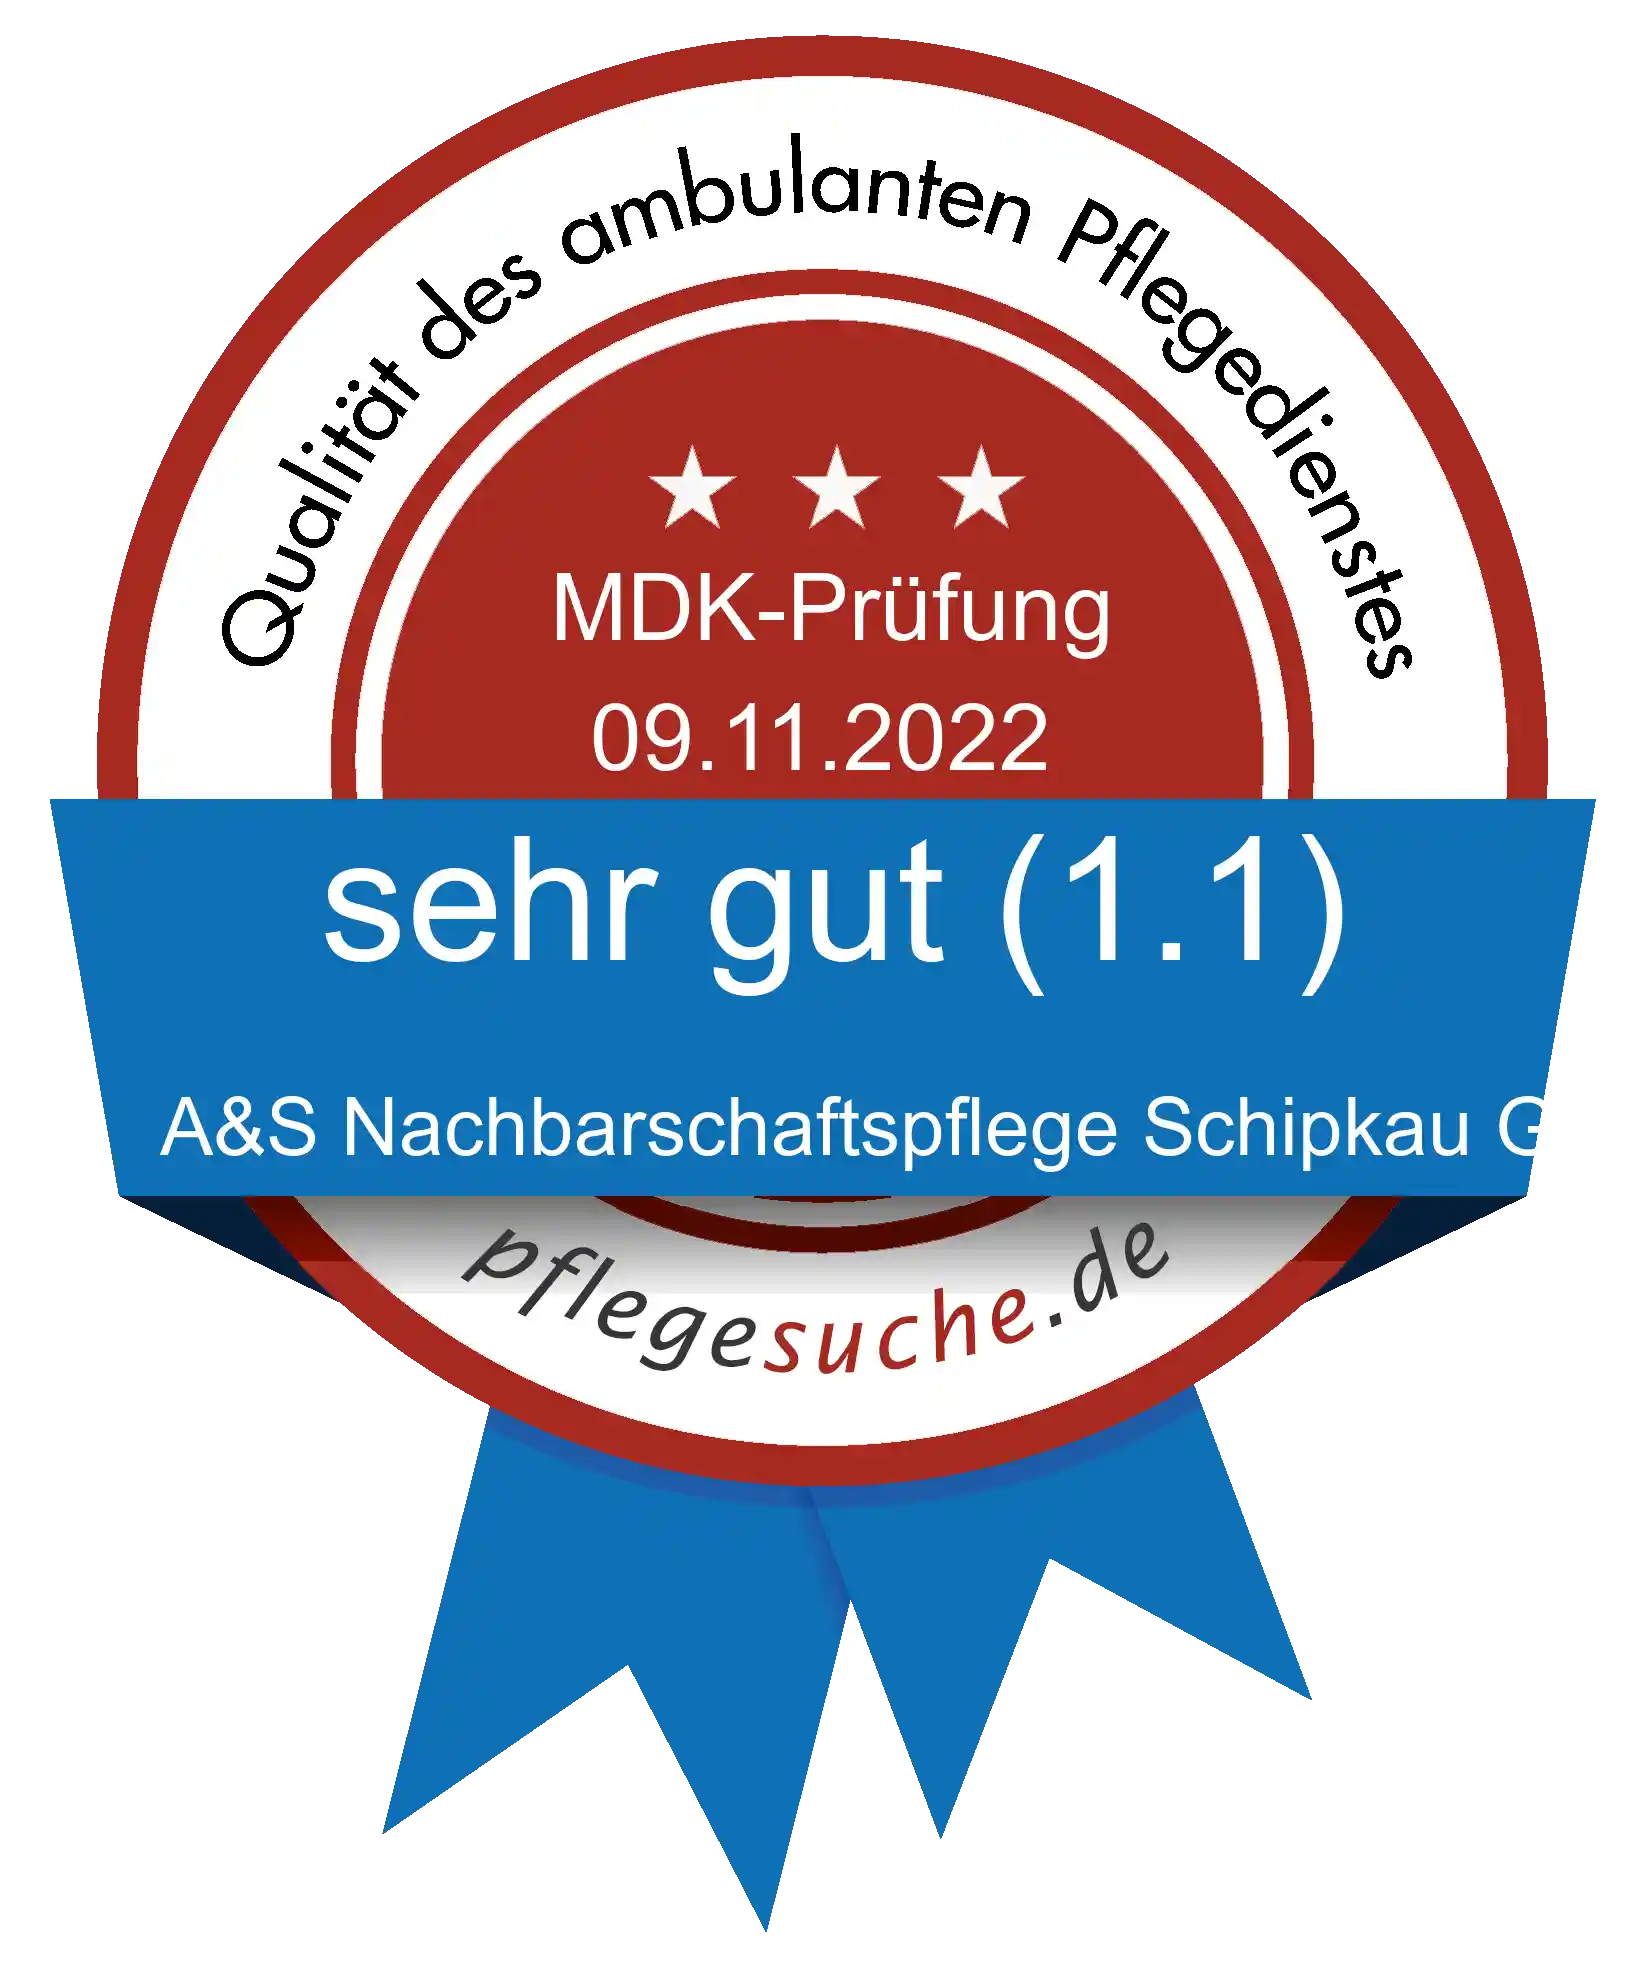 Siegel Benotung: A&S Nachbarschaftspflege Schipkau GmbH